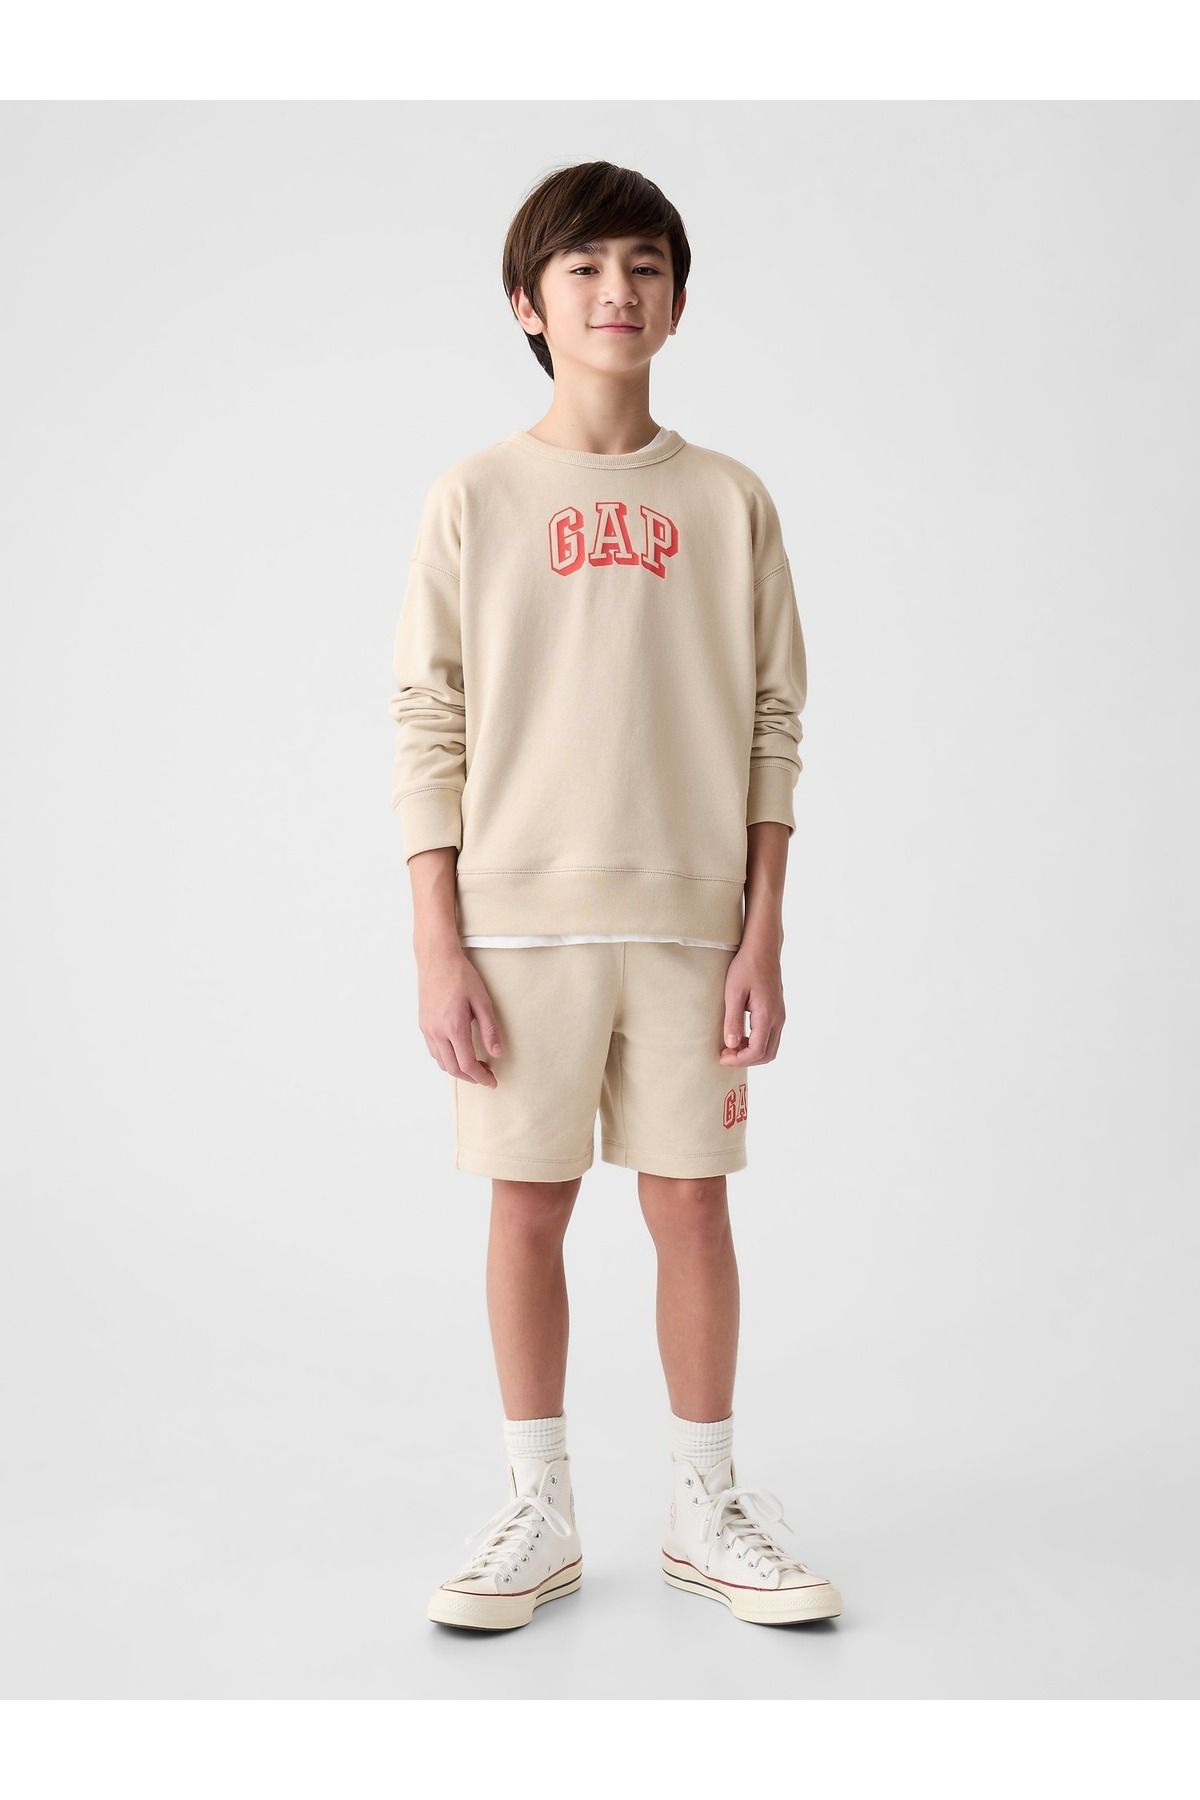 GAP Erkek Çocuk Bej Gap Logo Fransız Havlu Kumaş Sweatshirt